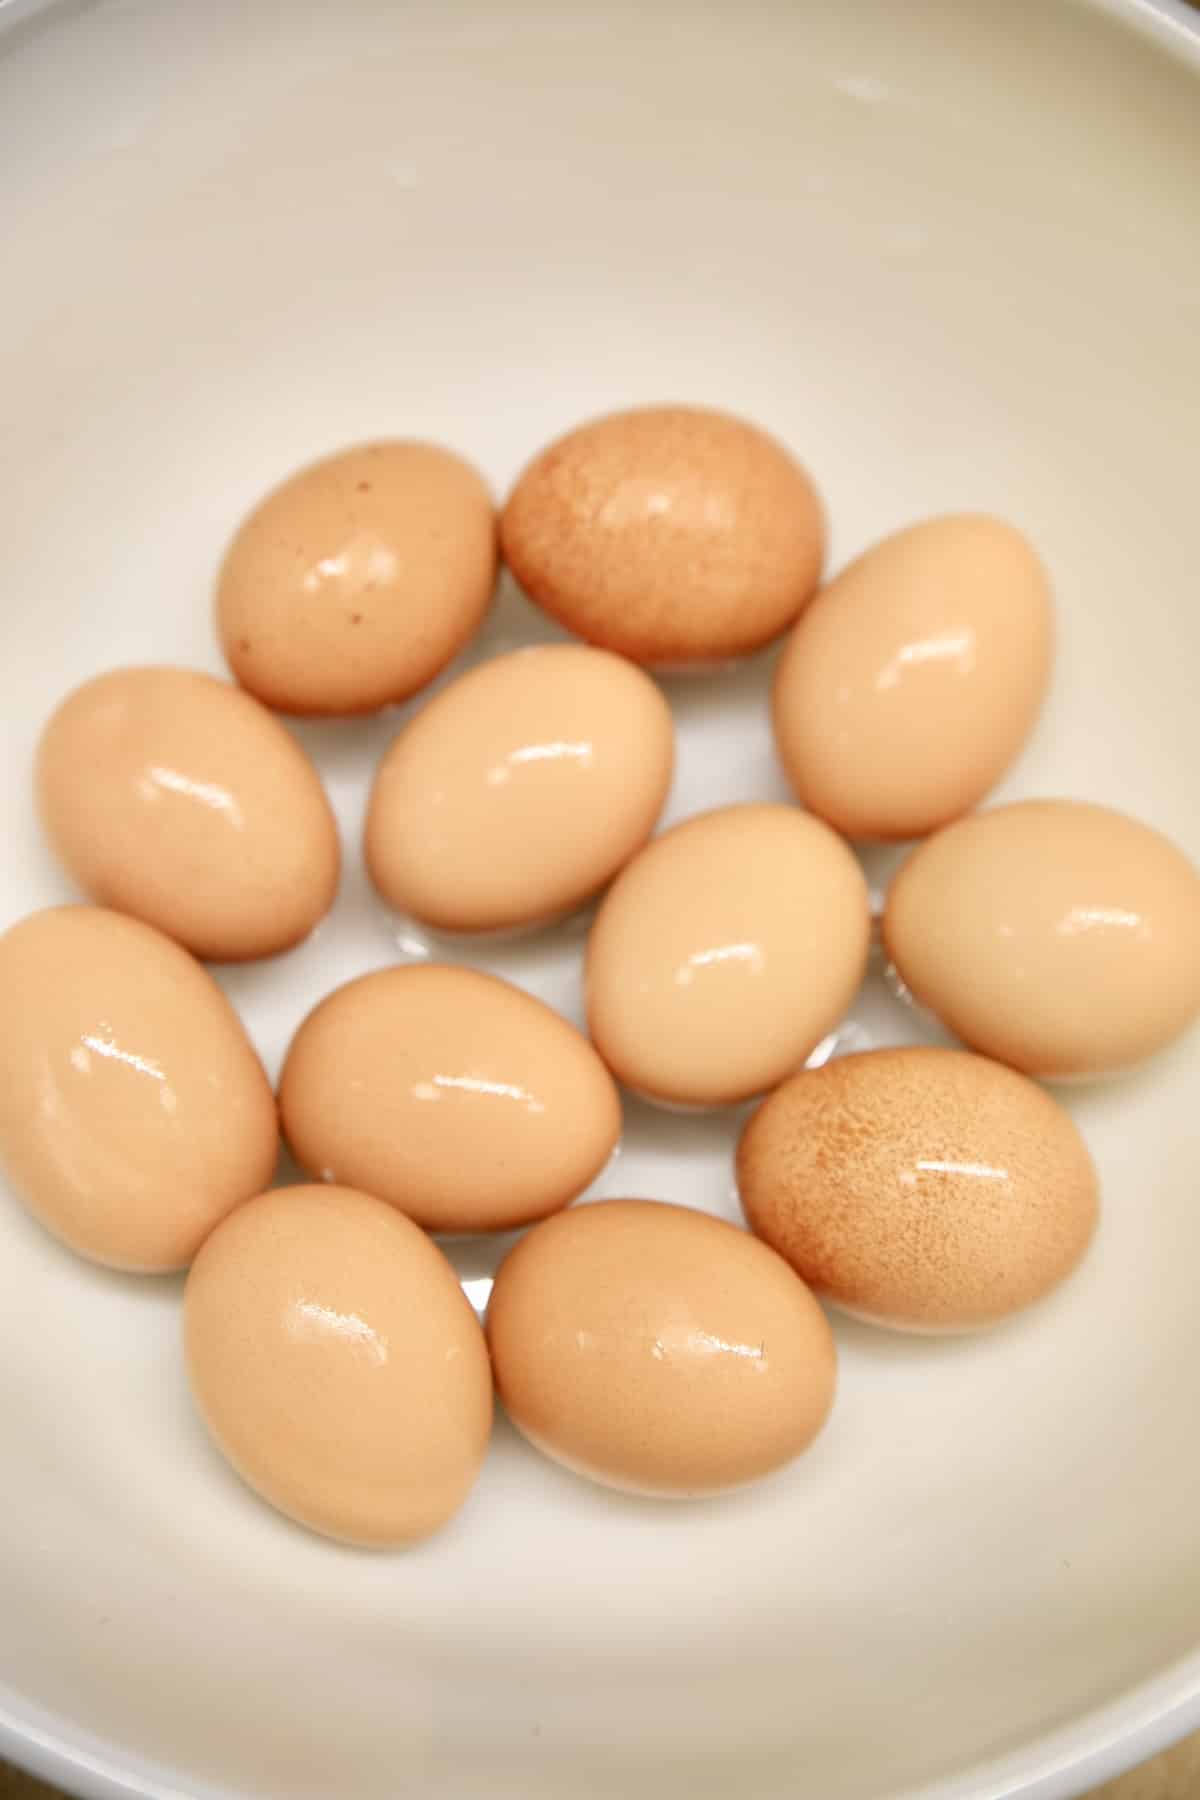 Bowl of boiled eggs.